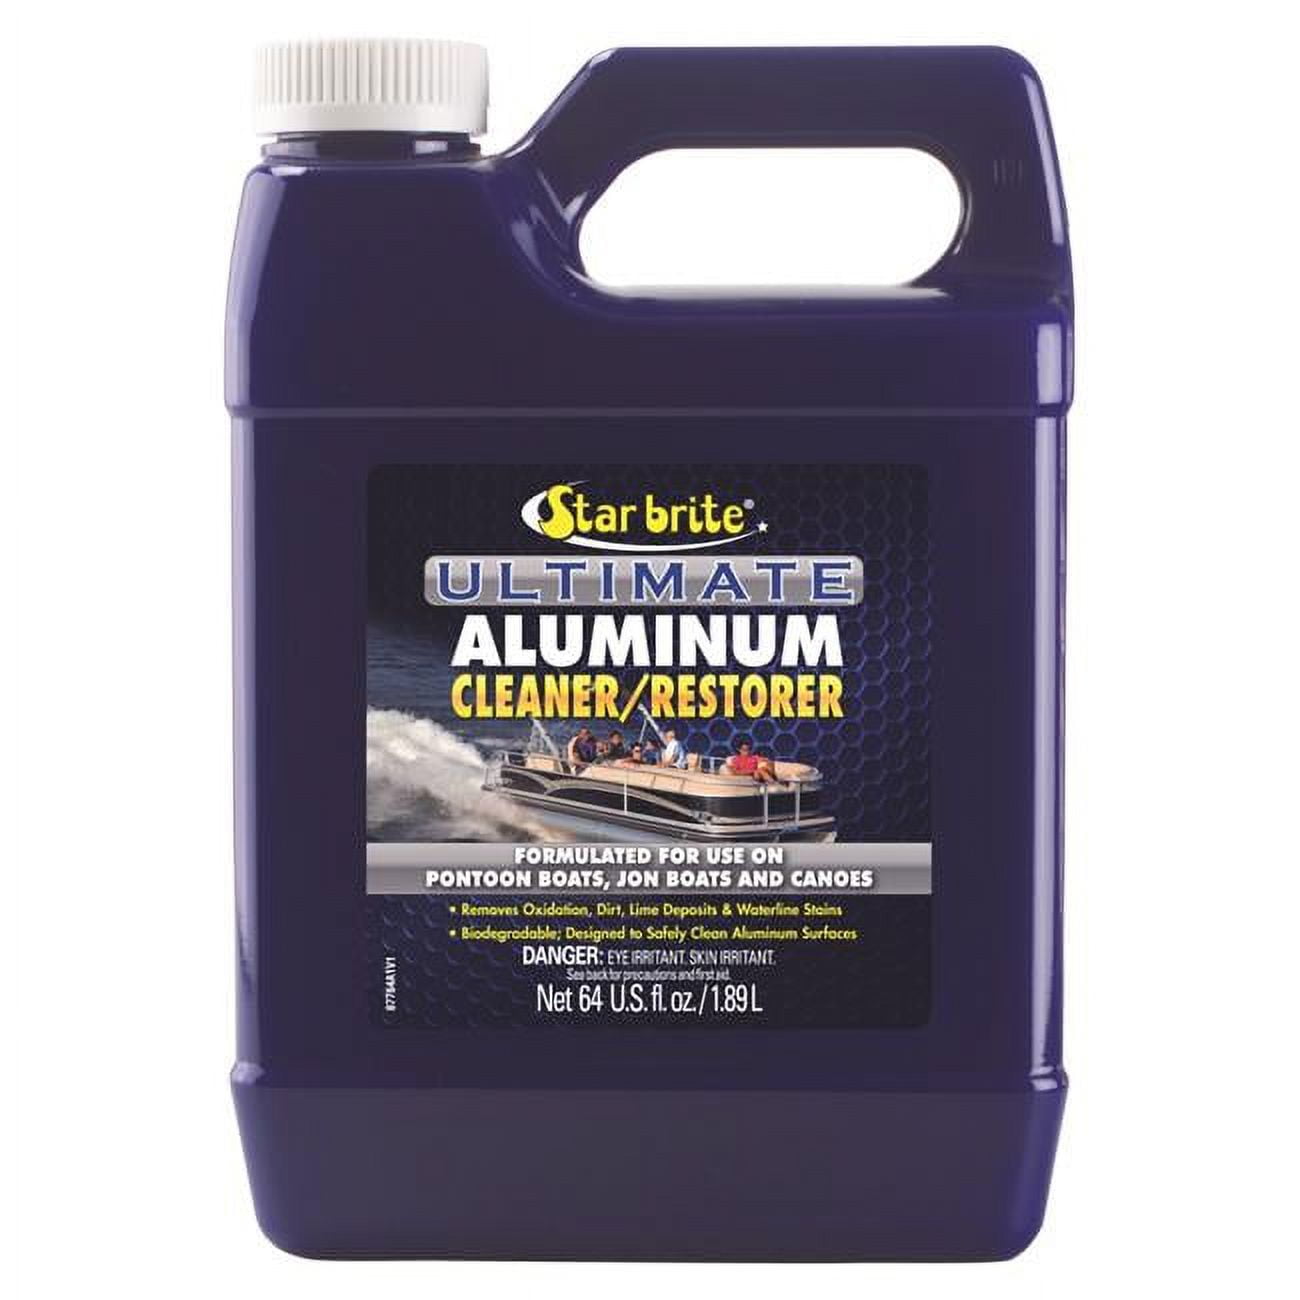 Ultimate Aluminum Cleaner/Restorer